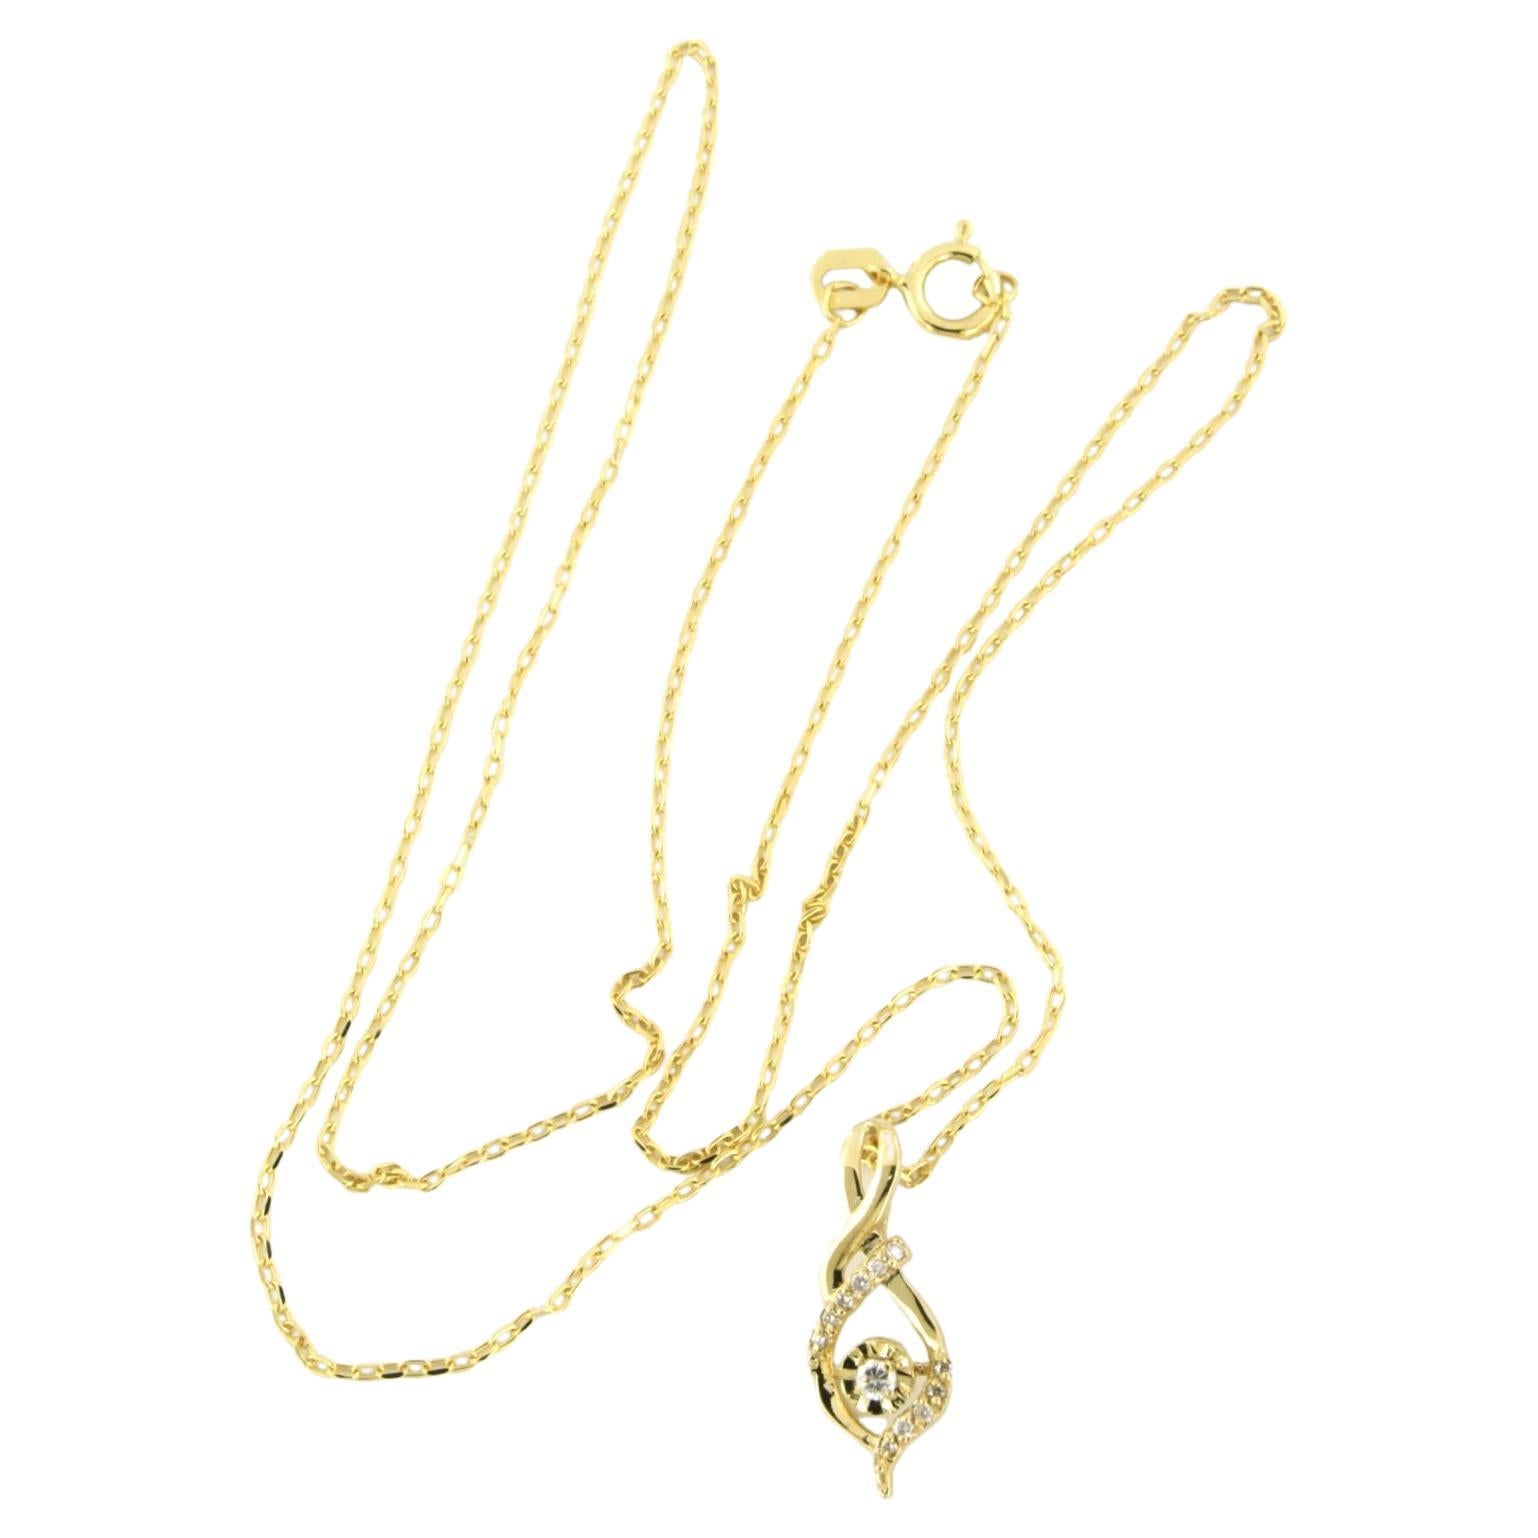 Collier et pendentif sertis de diamants taille brillant or jaune 14k